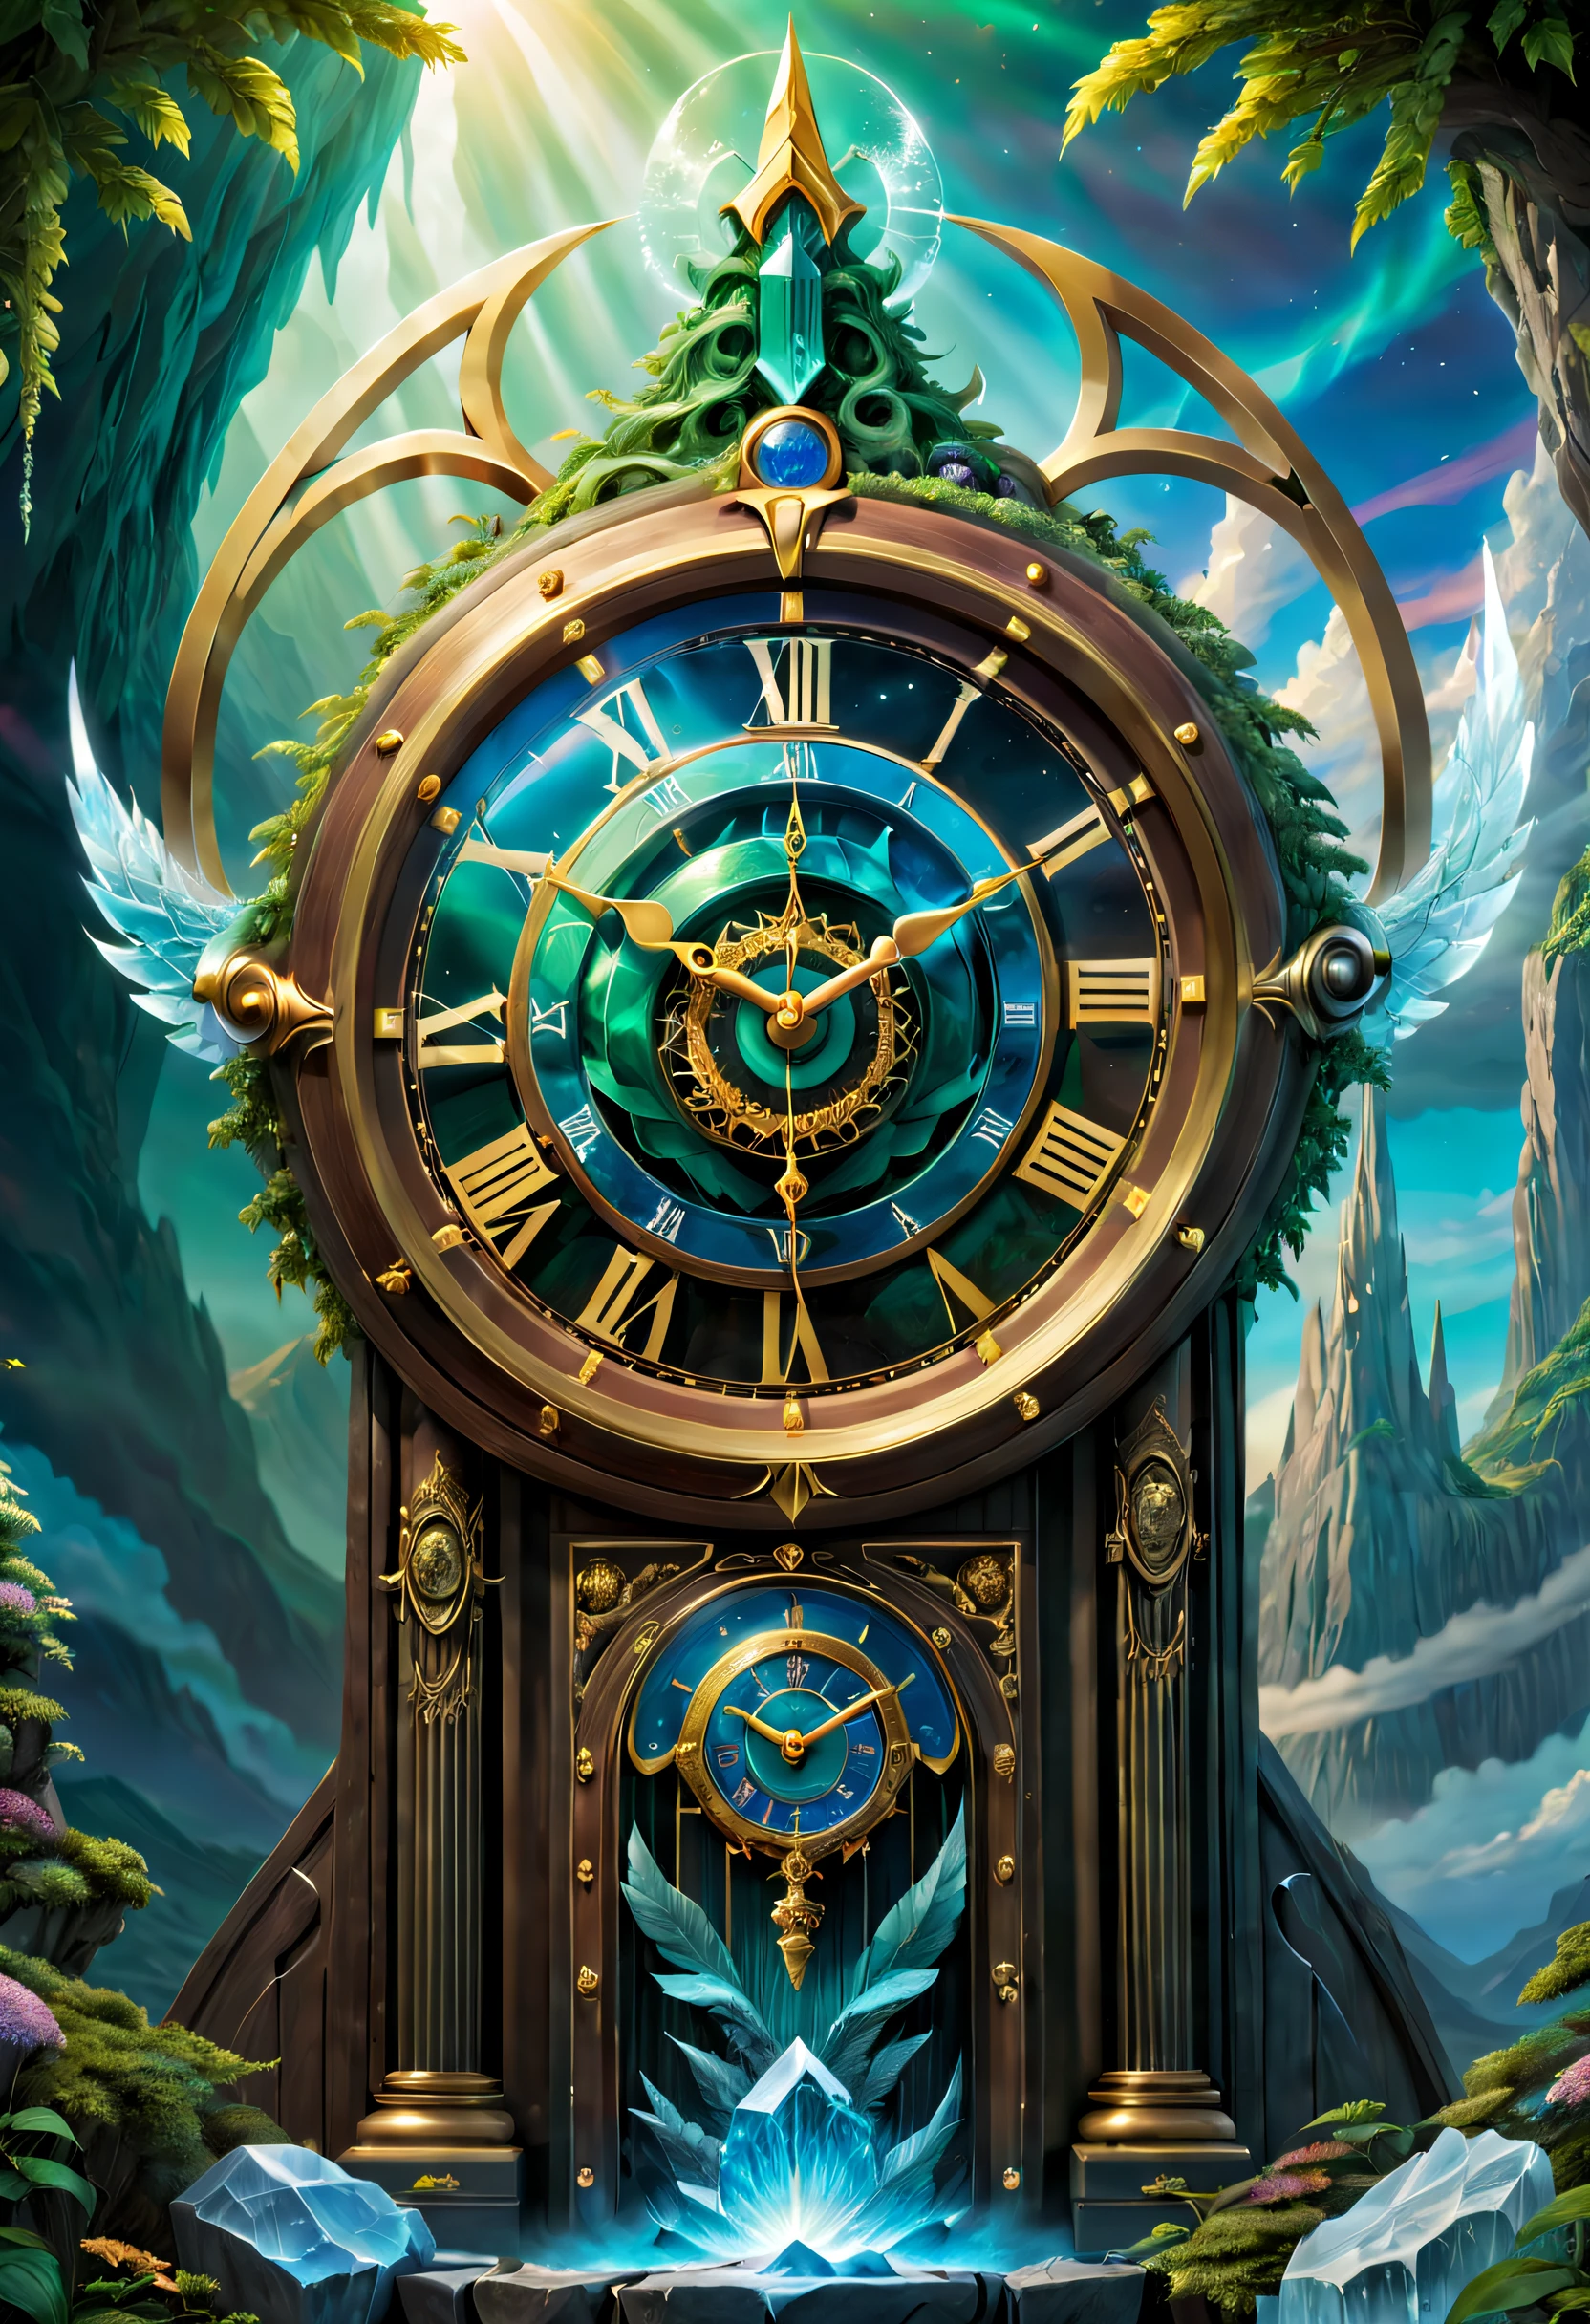 ساعة_مملكة, ساعة, IvoryGoldAI, (الفن التصوري, ألوان تشبه جيبلي, الواقعية المفرطة, فائق الوضوح, تحفة, دقيق, صحيح تشريحيا, تفاصيل فائقة, الحائز على جائزة, أفضل جودة, دقة عالية, 8 ك，الصورة مشرقة，الإضاءة العالمية，عالية مشبعة), خيالي, أسكارد, The ساعة of أسكارد，The ساعة gate of the gods of Norse mythology，أسكارد Clock，مصنوعة بالكامل من الكريستال وبلورات الثلج，شفاف وأبيض，الجليد واضح واليشم